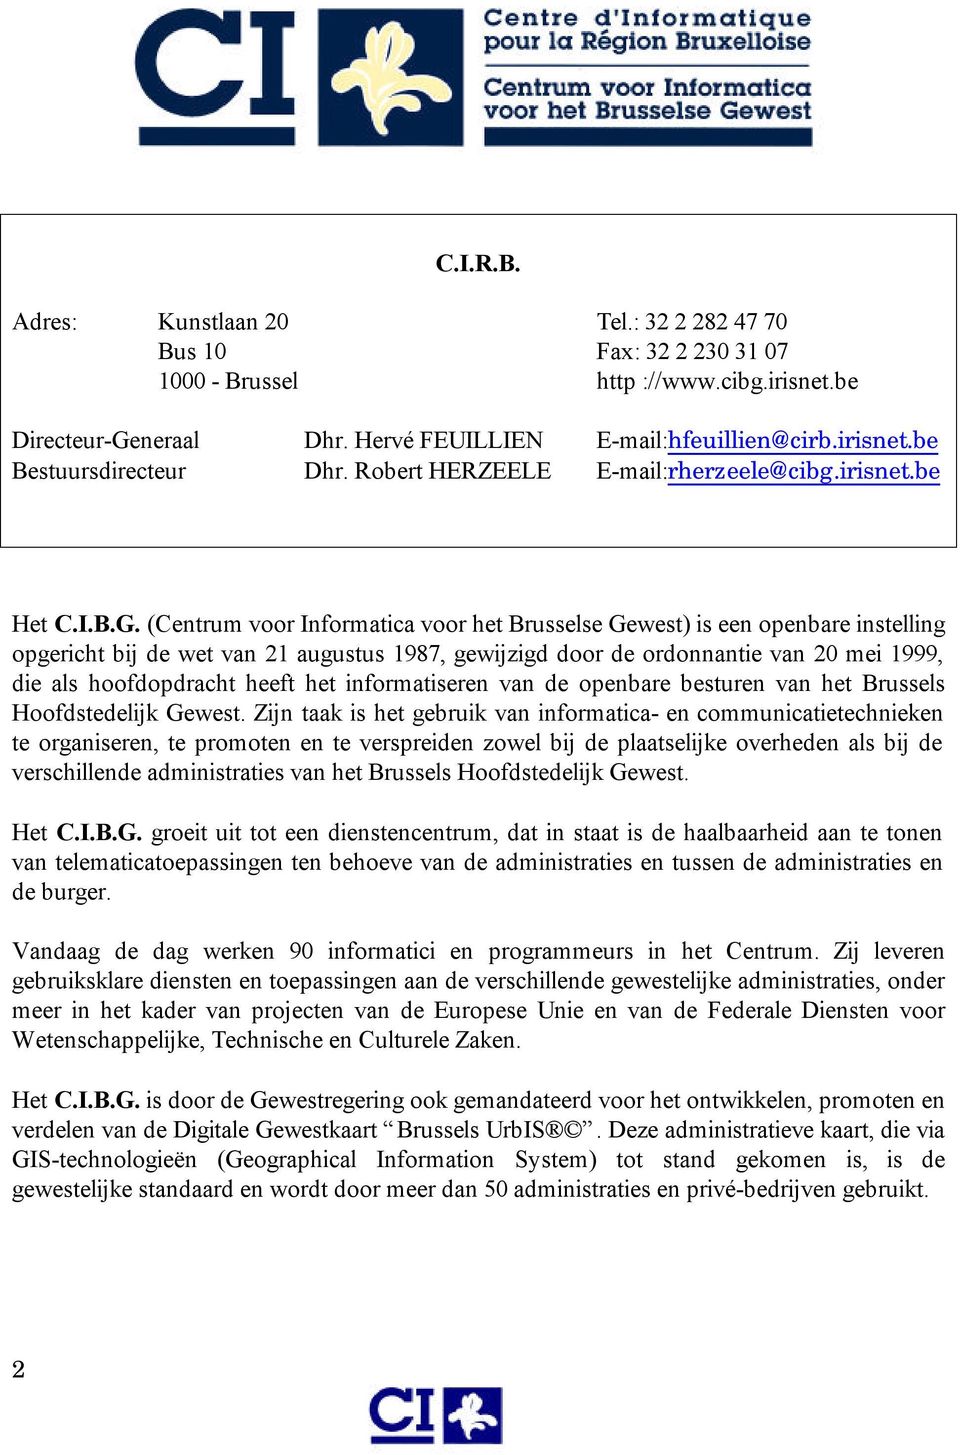 (Centrum voor Informatica voor het Brusselse Gewest) is een openbare instelling opgericht bij de wet van 21 augustus 1987, gewijzigd door de ordonnantie van 20 mei 1999, die als hoofdopdracht heeft